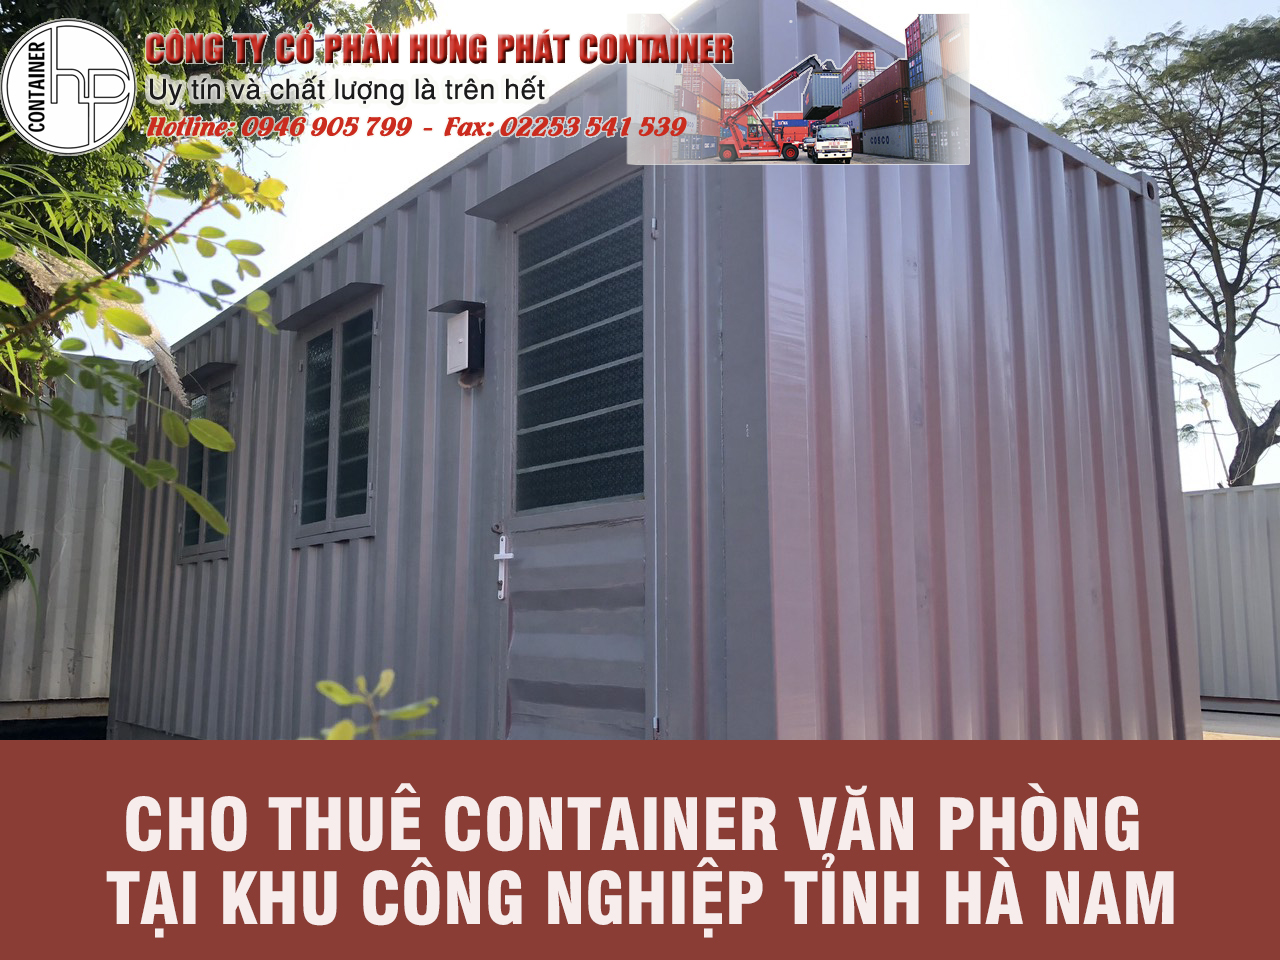 Cho thuê container văn phòng tại khu công nghiệp Tỉnh Hà Nam